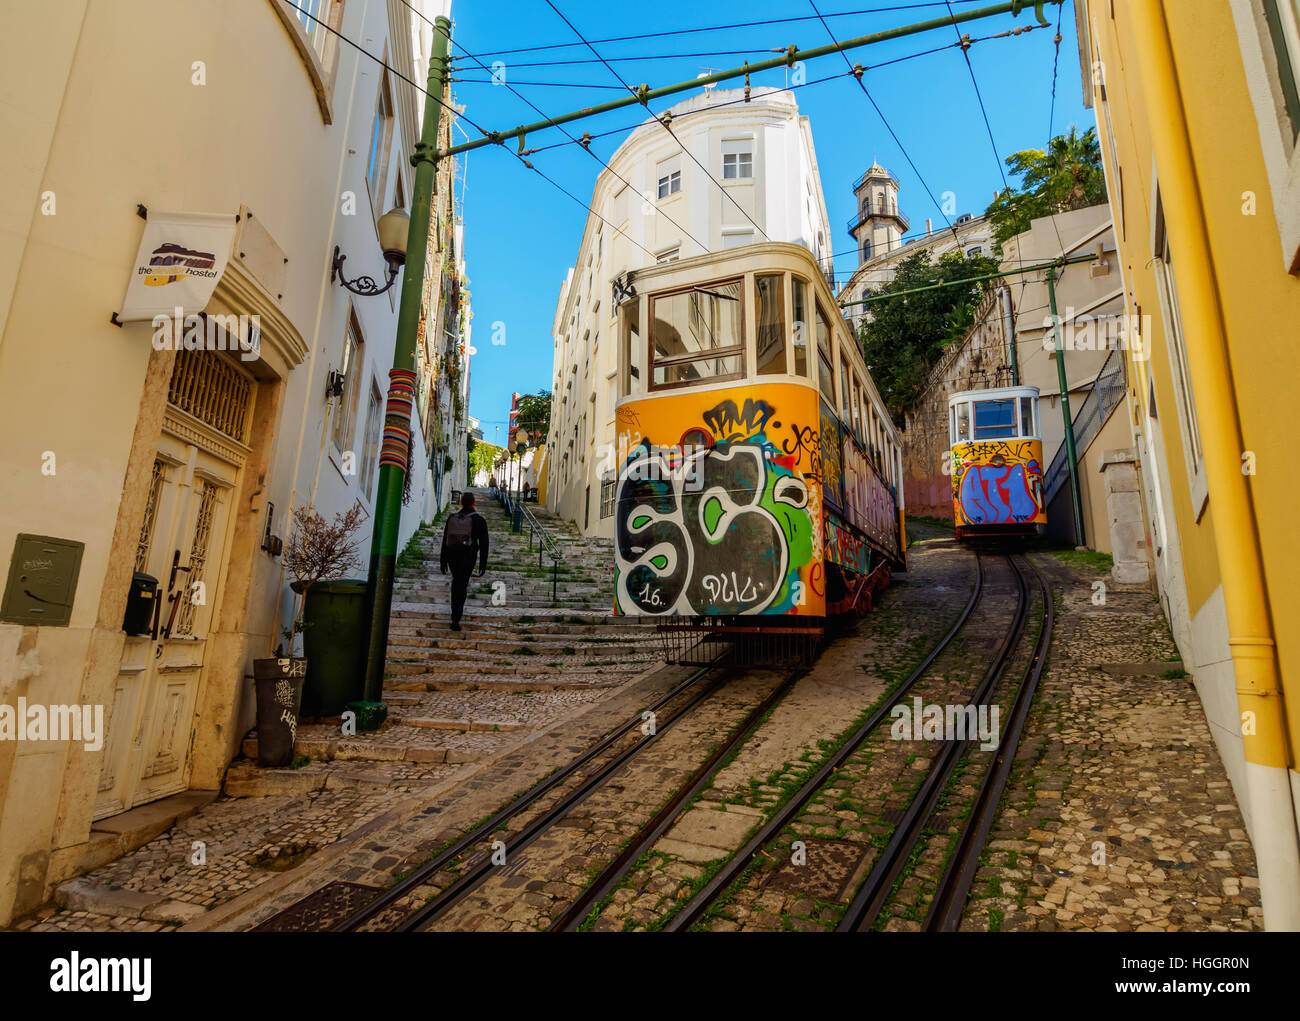 Portugal, Lisbonne, vue de la Laure funiculaire. Banque D'Images